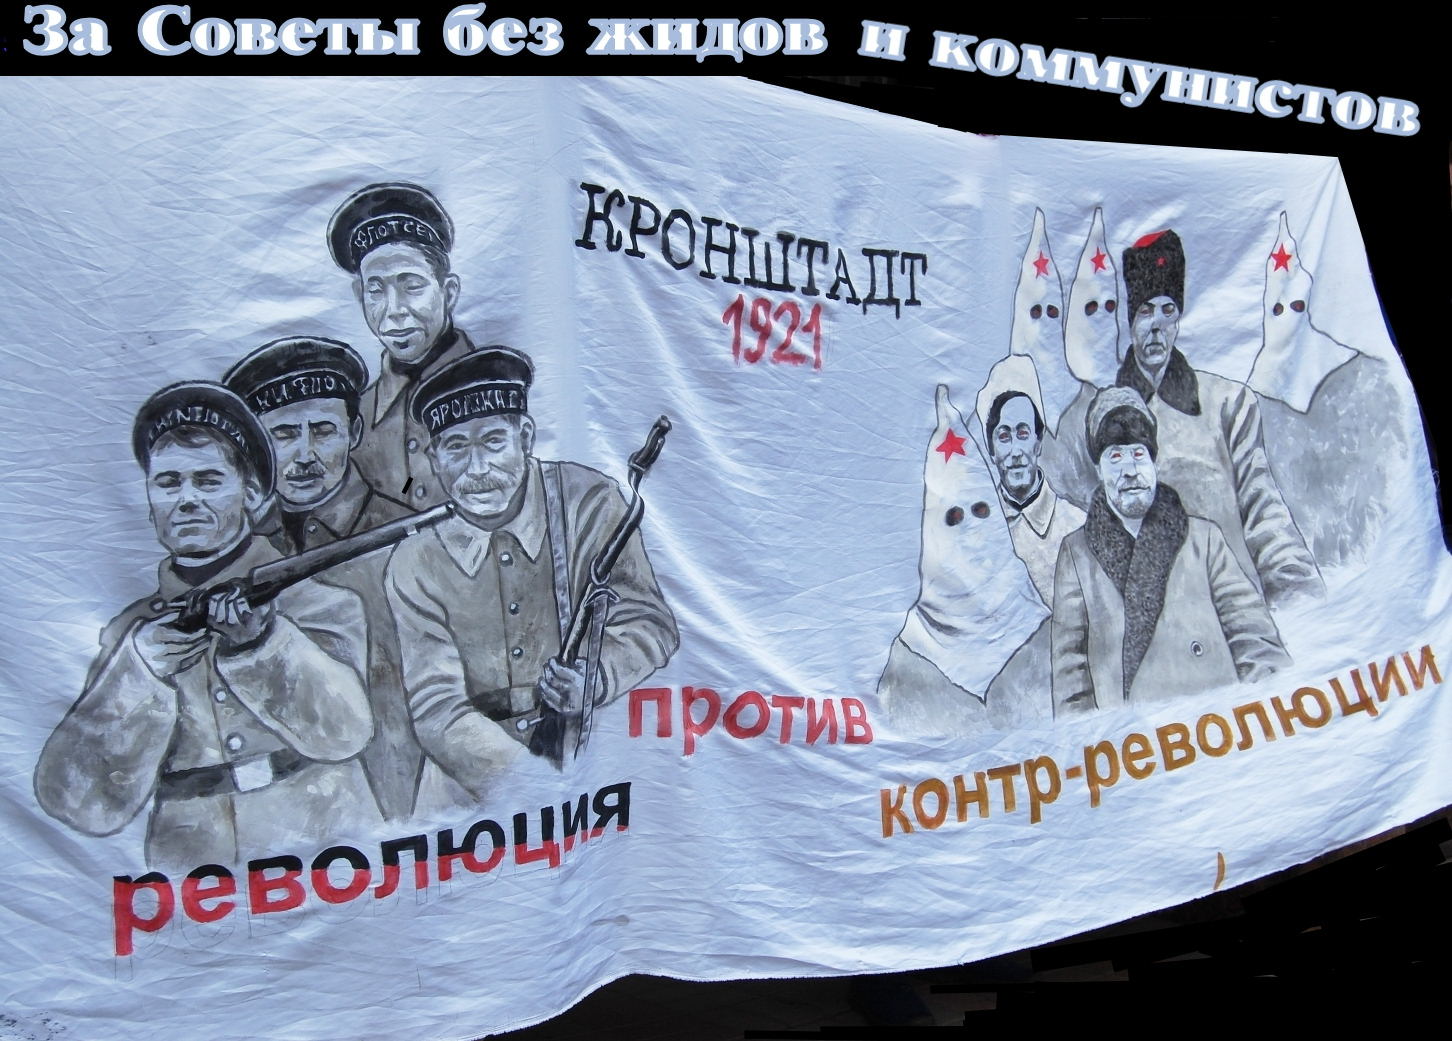 Рождает власть. Контрреволюция плакат. Революционный матрос плакат. Советы без коммунистов лозунг. Анархические лозунги.